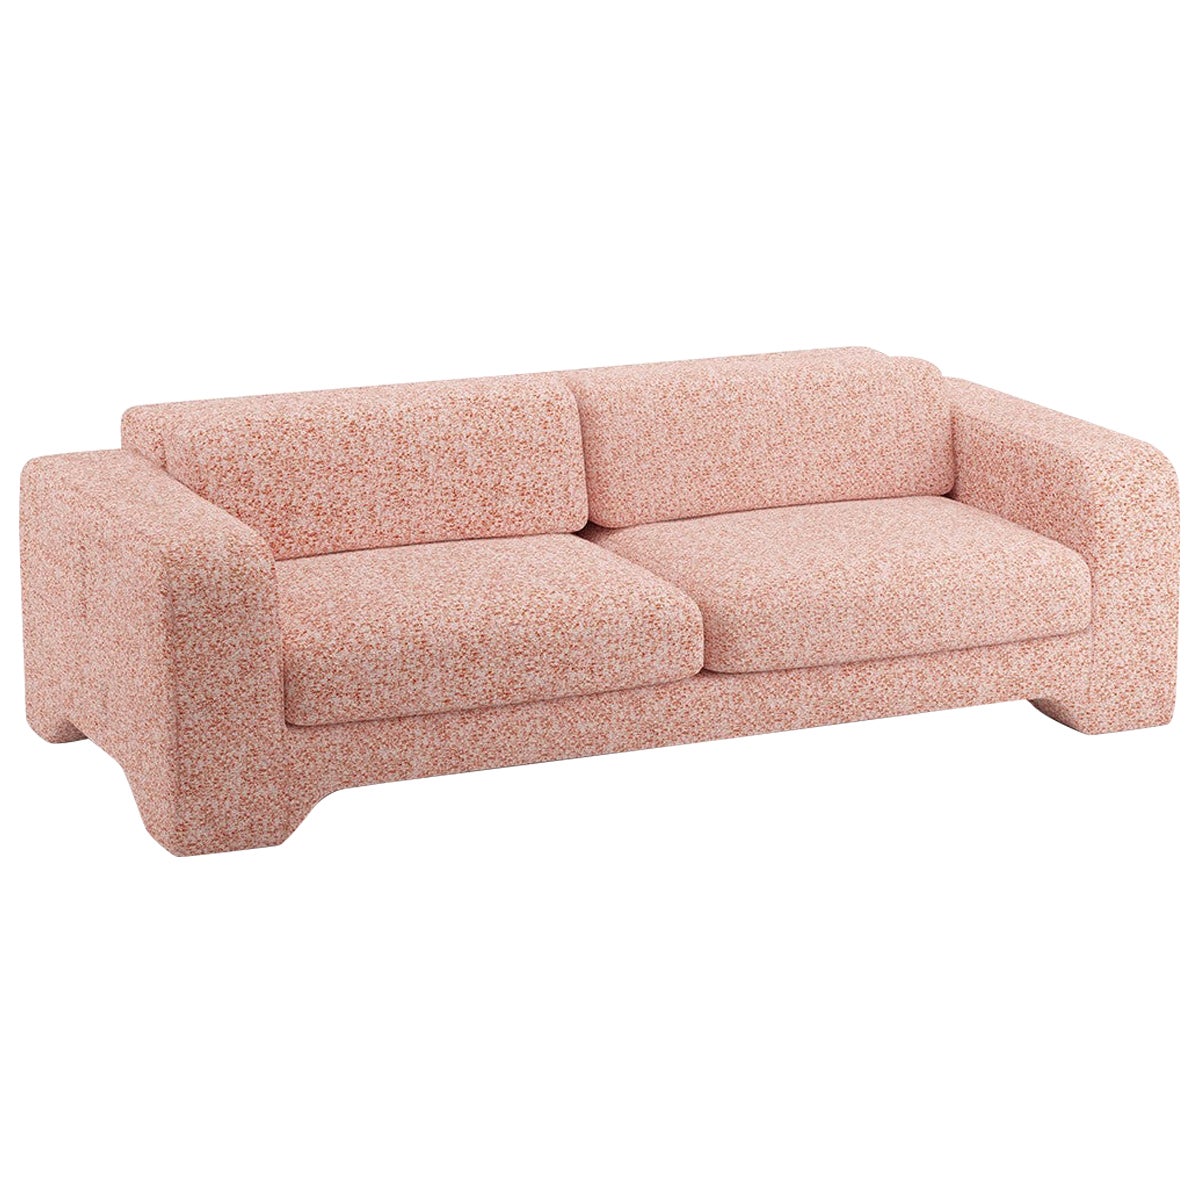 Popus Editions Giovanna 2.5 Seater Sofa in Rust Zanzi Linen Fabric For Sale